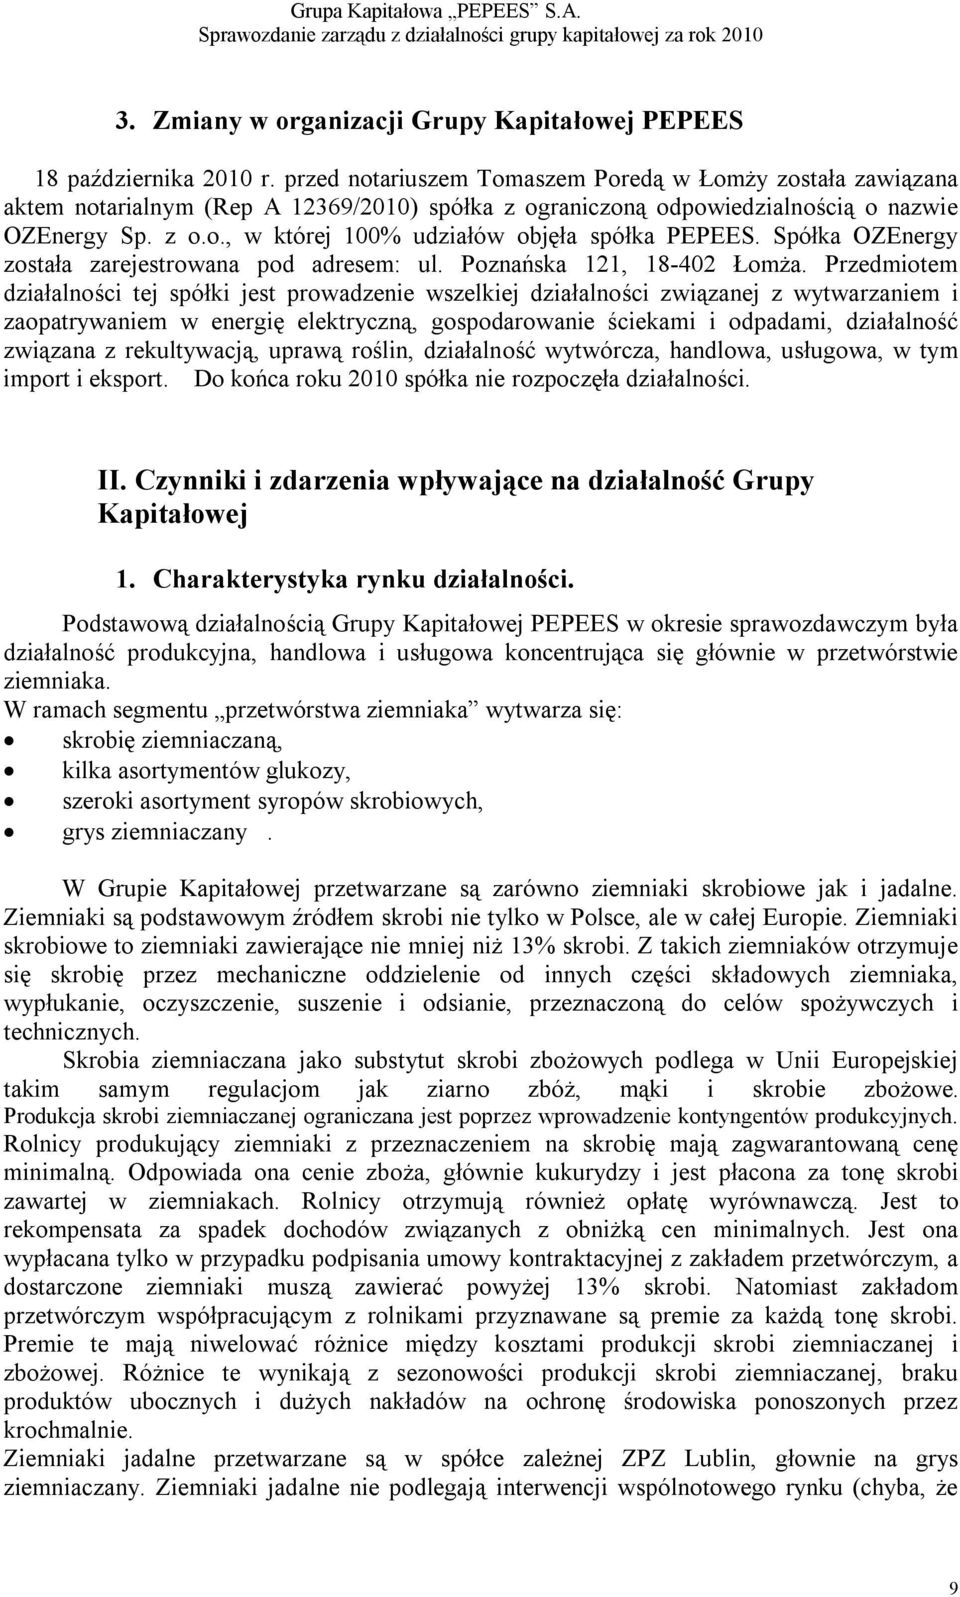 Spółka OZEnergy została zarejestrowana pod adresem: ul. Poznańska 121, 18-402 Łomża.